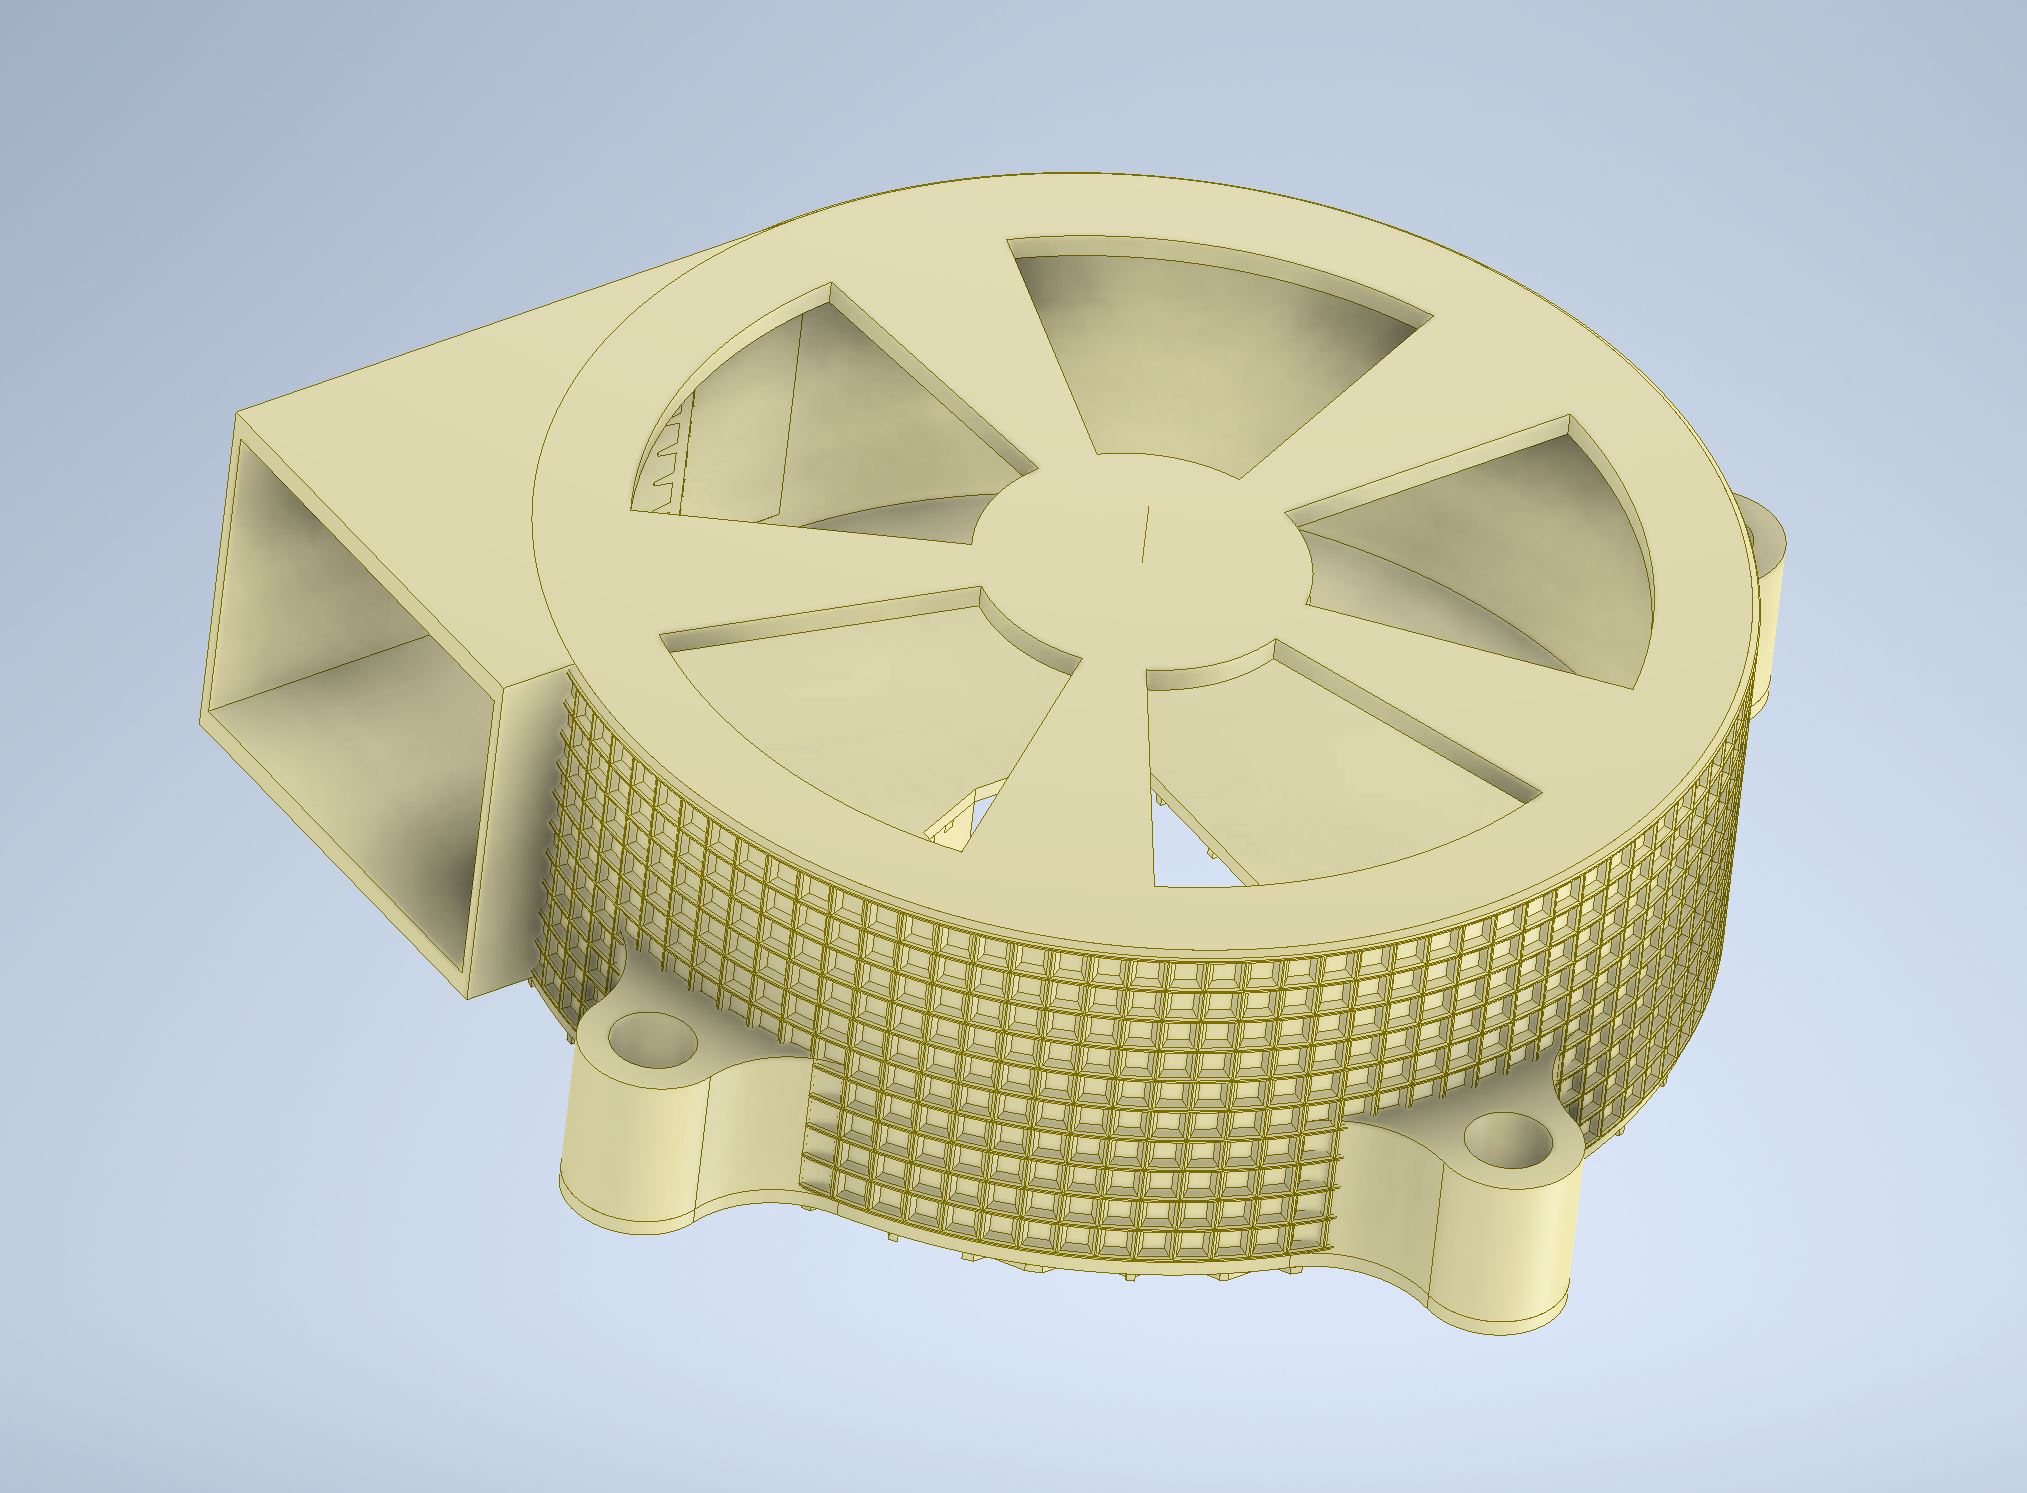 Radial fan with fan casing for small DC Motors (6-12V) Version II